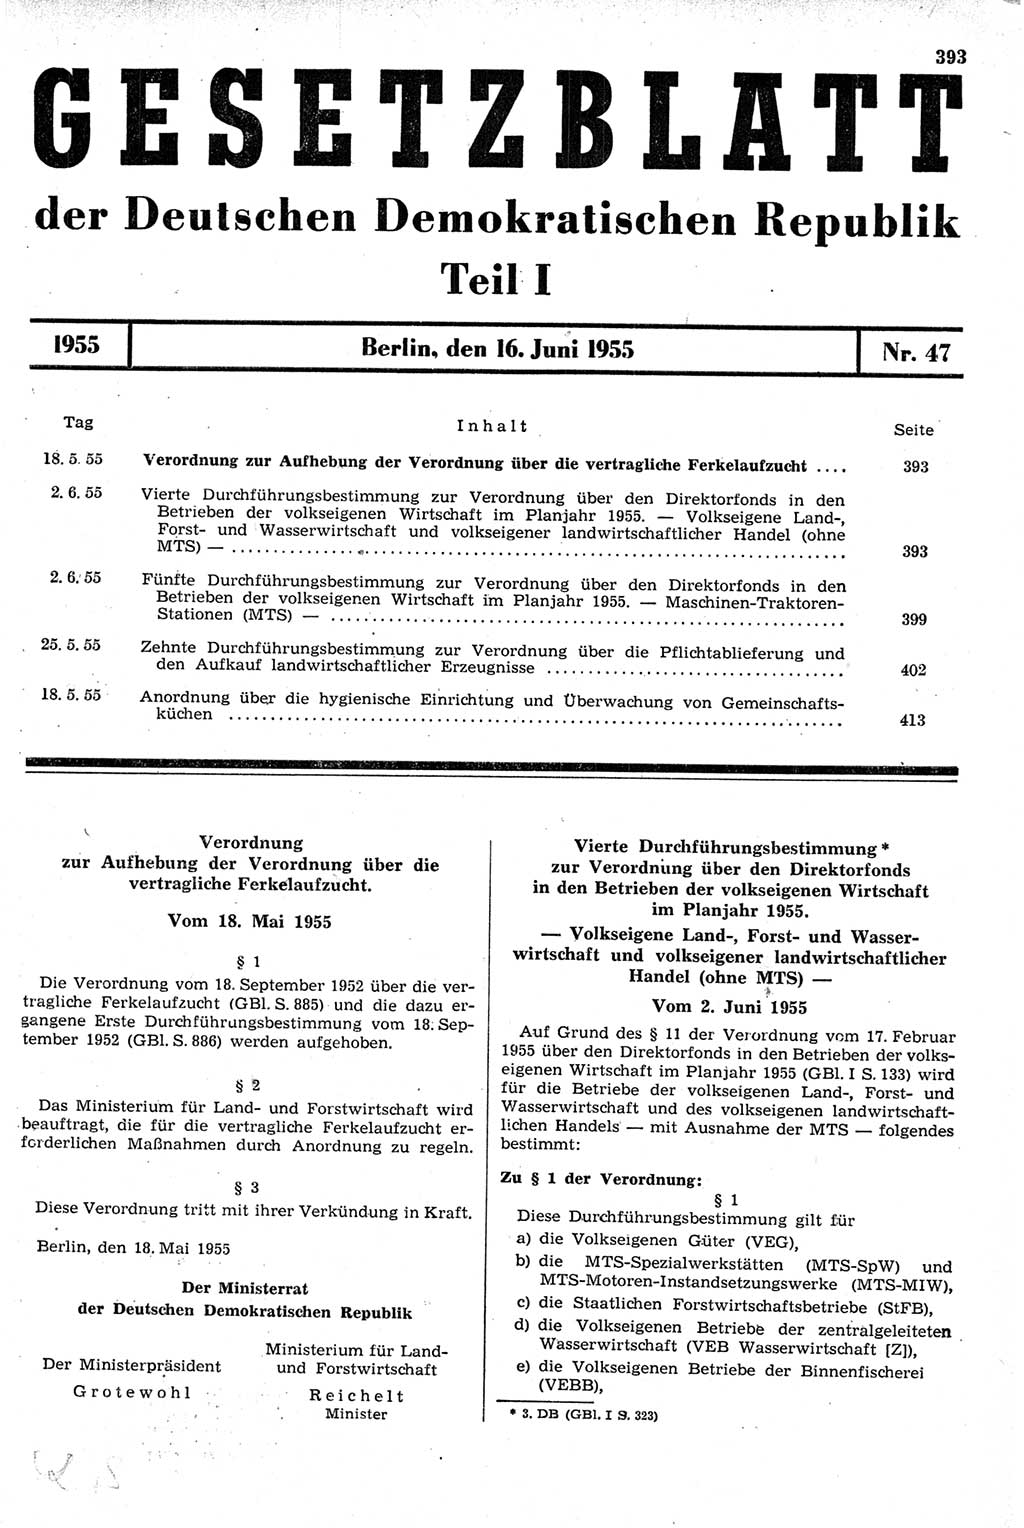 Gesetzblatt (GBl.) der Deutschen Demokratischen Republik (DDR) Teil Ⅰ 1955, Seite 393 (GBl. DDR Ⅰ 1955, S. 393)